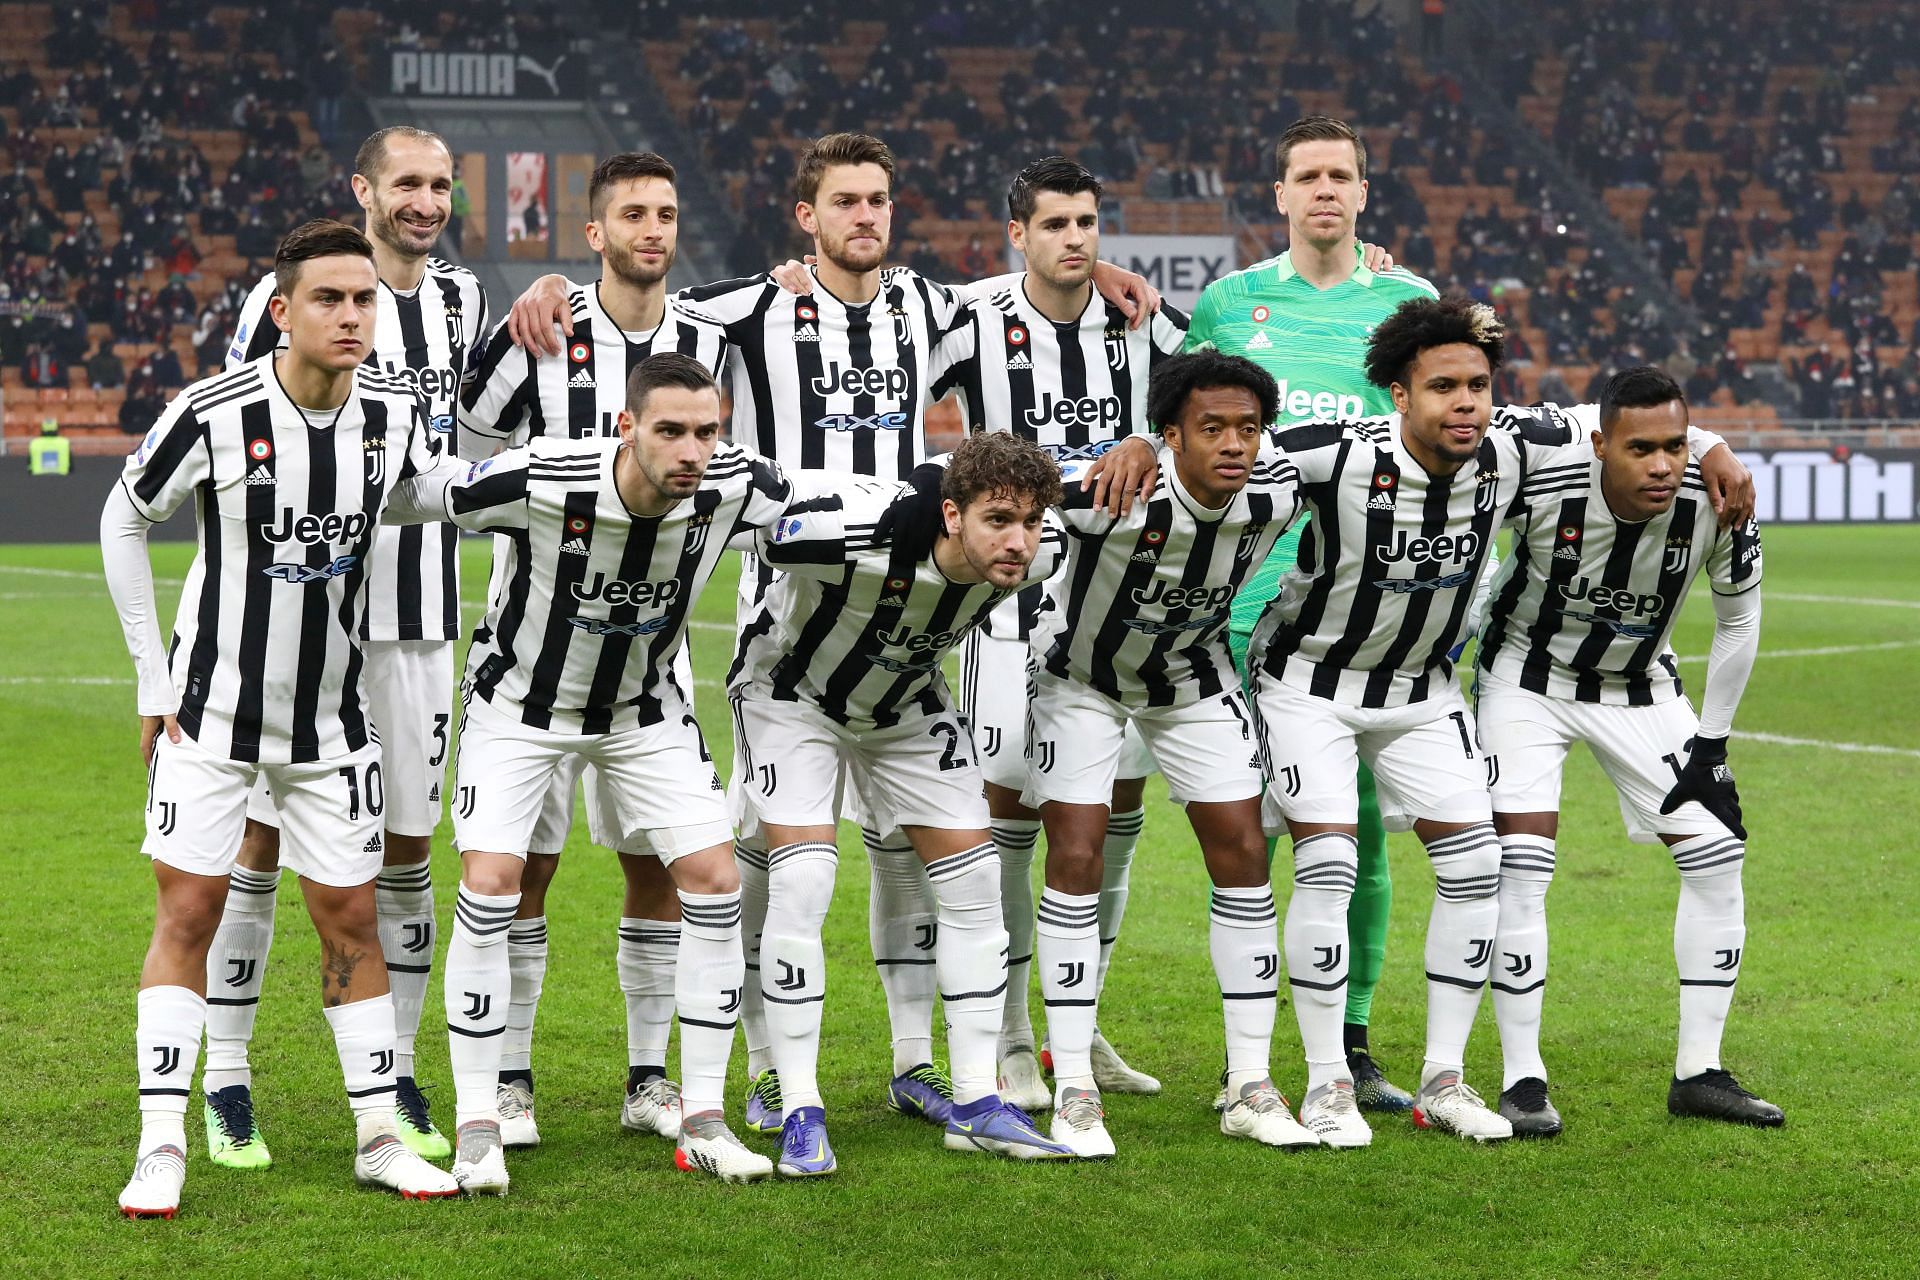 AC Milan v Juventus - Serie A